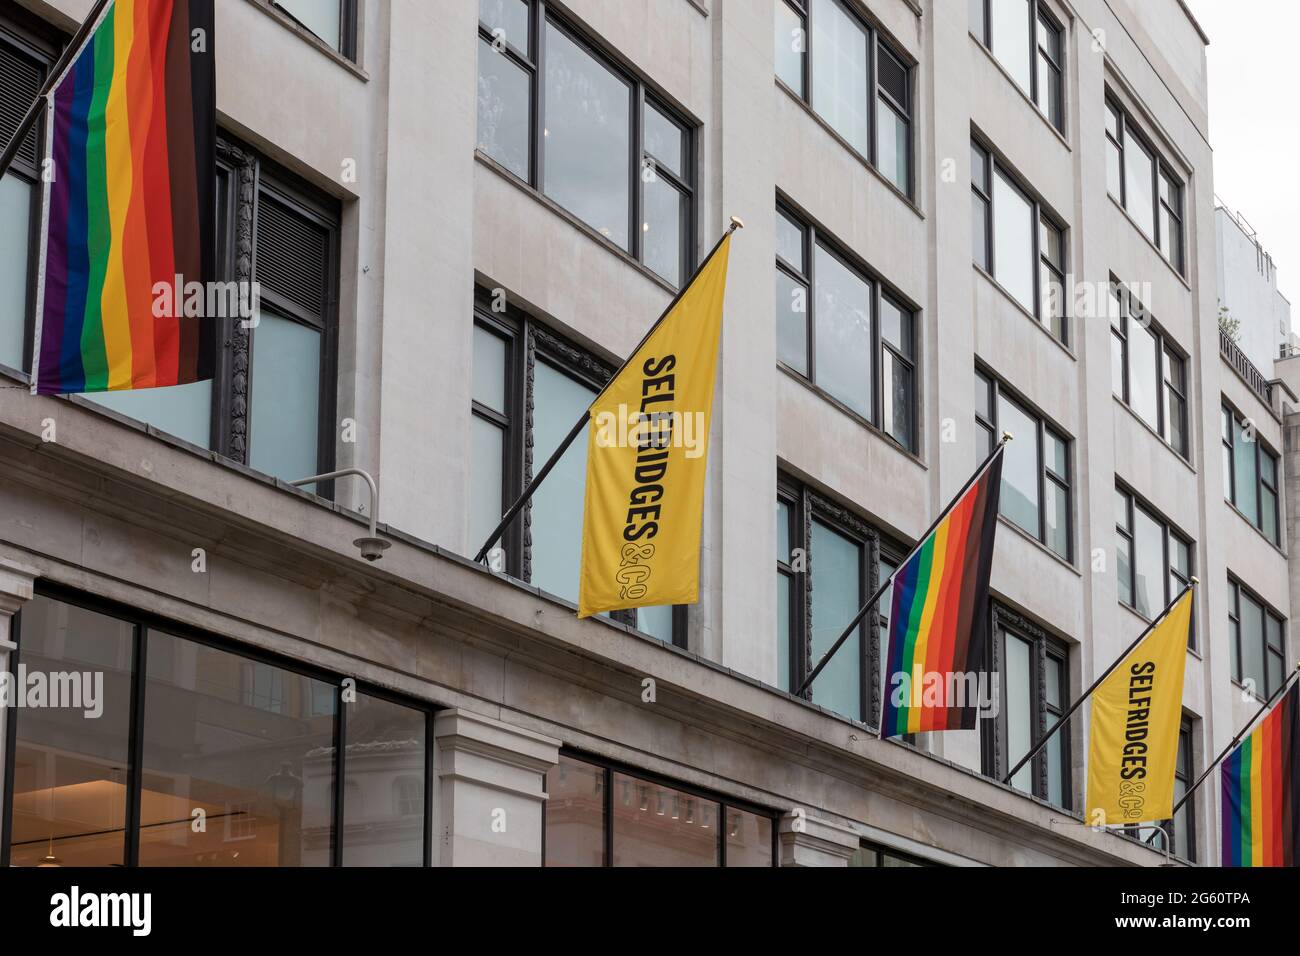 Regenbogenfahnen, die im Kaufhaus Selfridges im Oxford Circus, London, angebracht sind.der Juni ist in Großbritannien traditionell der Pride-Monat. Zur Feier der Pride-Bewegung werden Geschäfte und Unternehmen in ganz London mit regenbogenfarbenen Dekorationen und Schildern gesehen, um ihre Unterstützung für die LGBT-Gemeinschaft und ihre Rechte zu zeigen. Viele große Geschäfte hoben die Regenbogenflagge, während kleinere Geschäfte ihr Engagement für Vielfalt und Einbeziehung durch regenbogenfarbene Aufkleber und Schilder zum Ausdruck brachten. (Foto von Belinda Jiao/SOPA Images/Sipa USA) Stockfoto